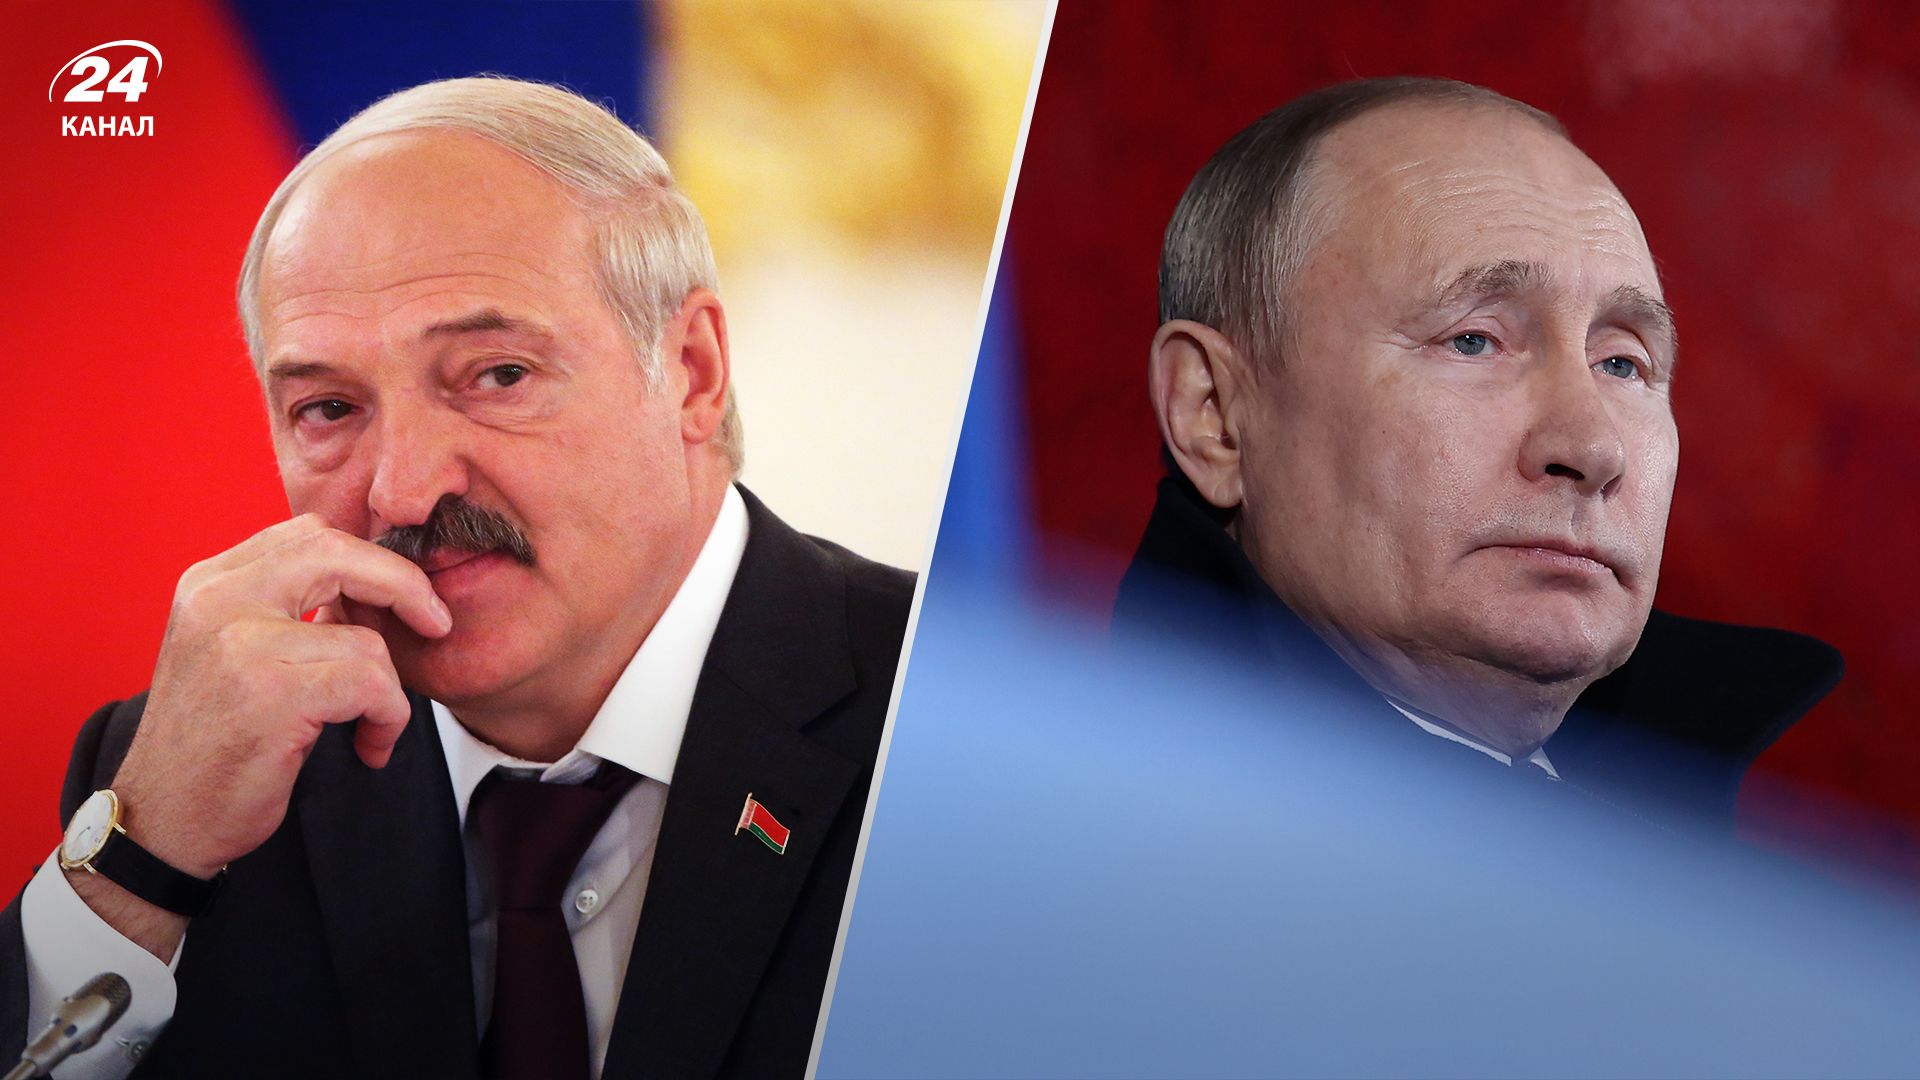 Путин и Лукашенко поднимают тему переговоров - Латушко назвал три цели - 24 Канал